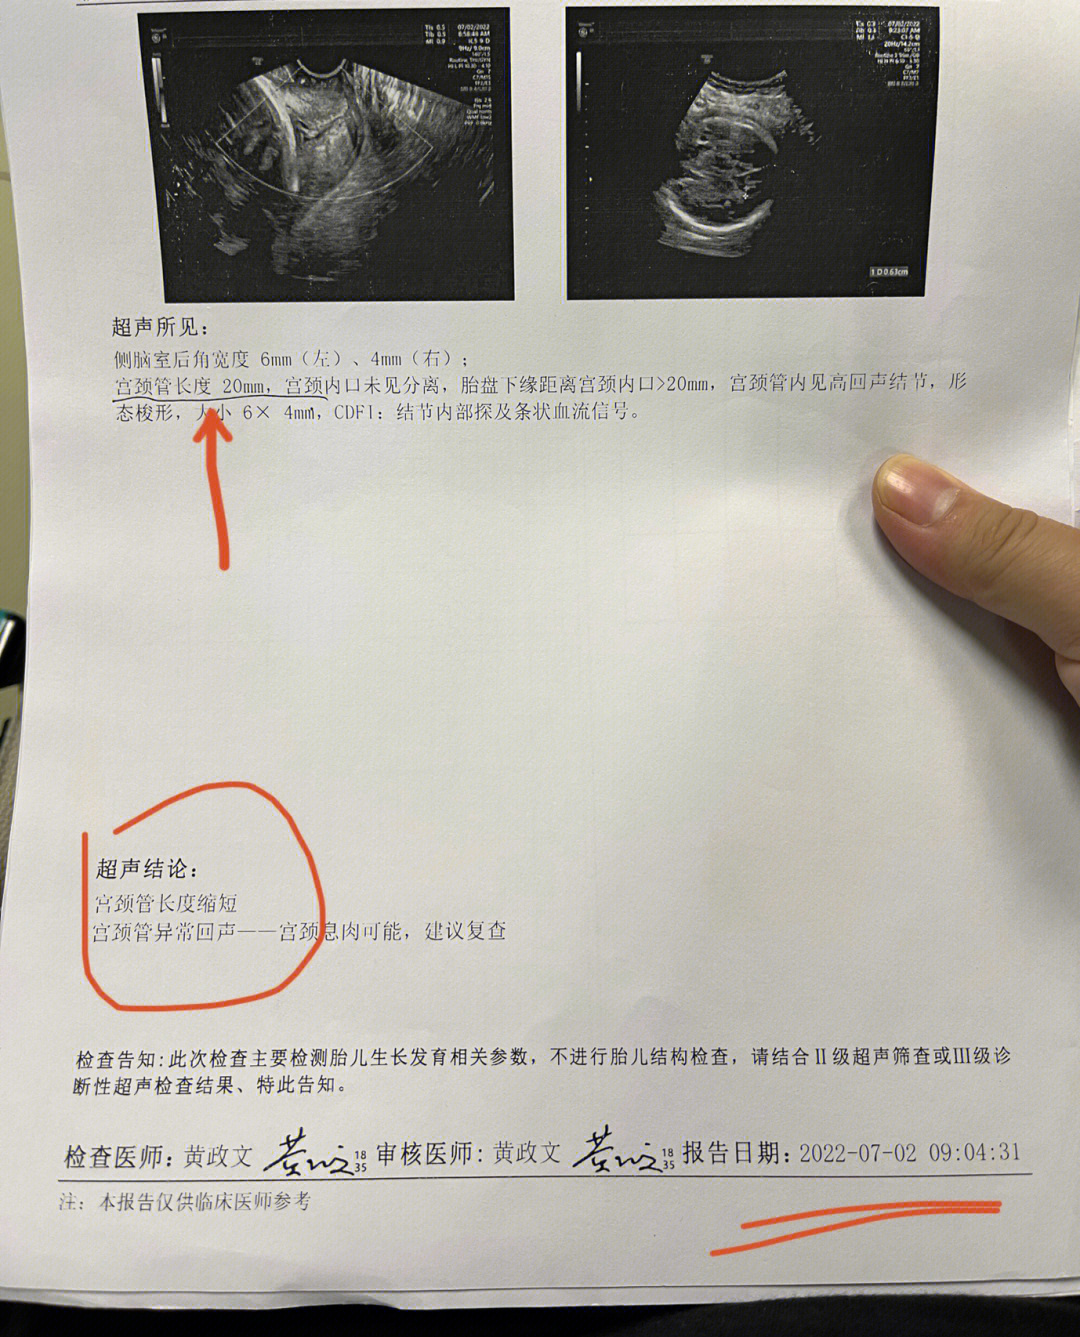 宫颈管短图片图片